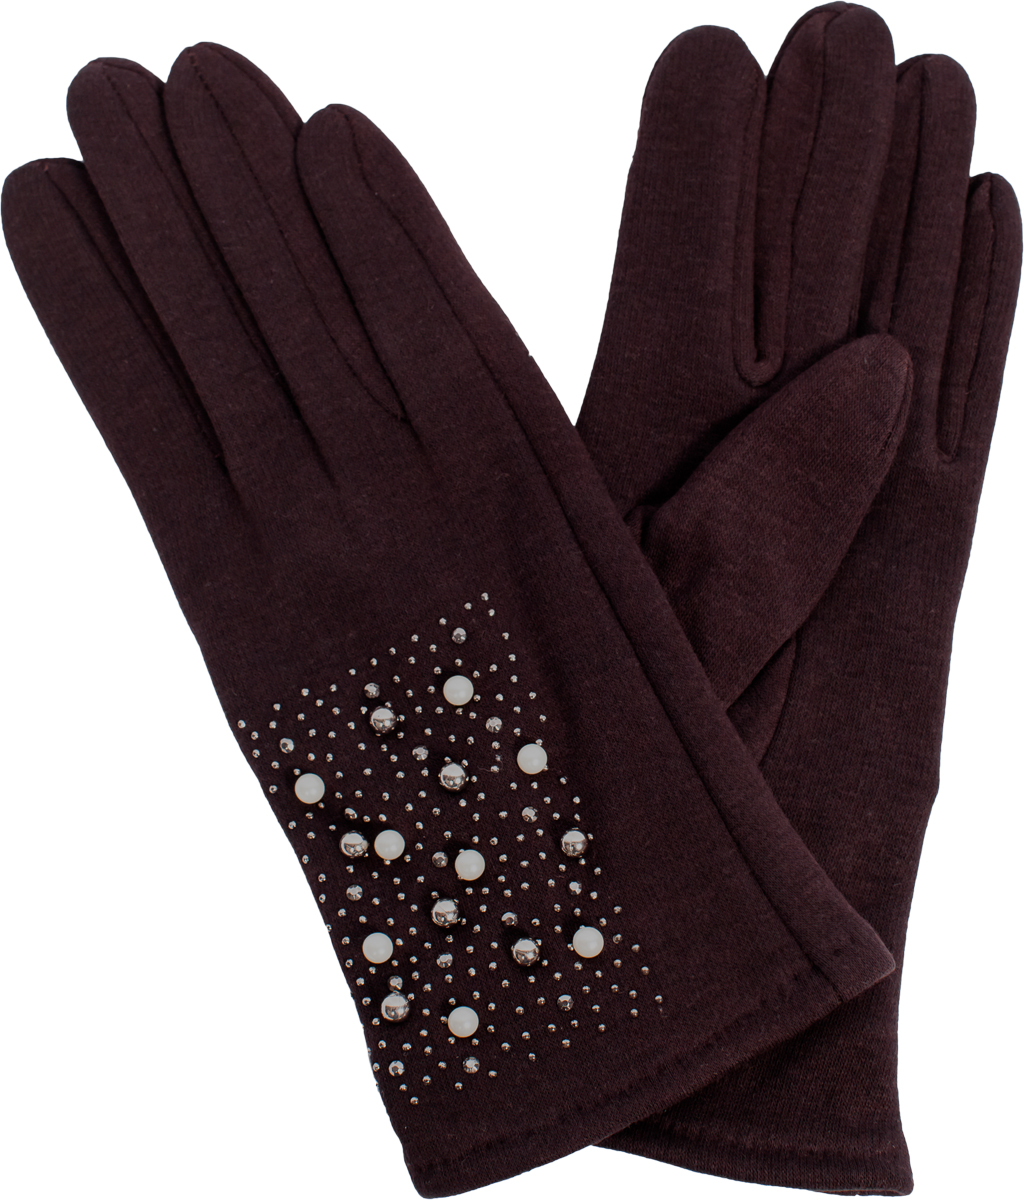 Перчатки женские Sophie Ramage, цвет: коричневый. GL-217035. Размер универсальный